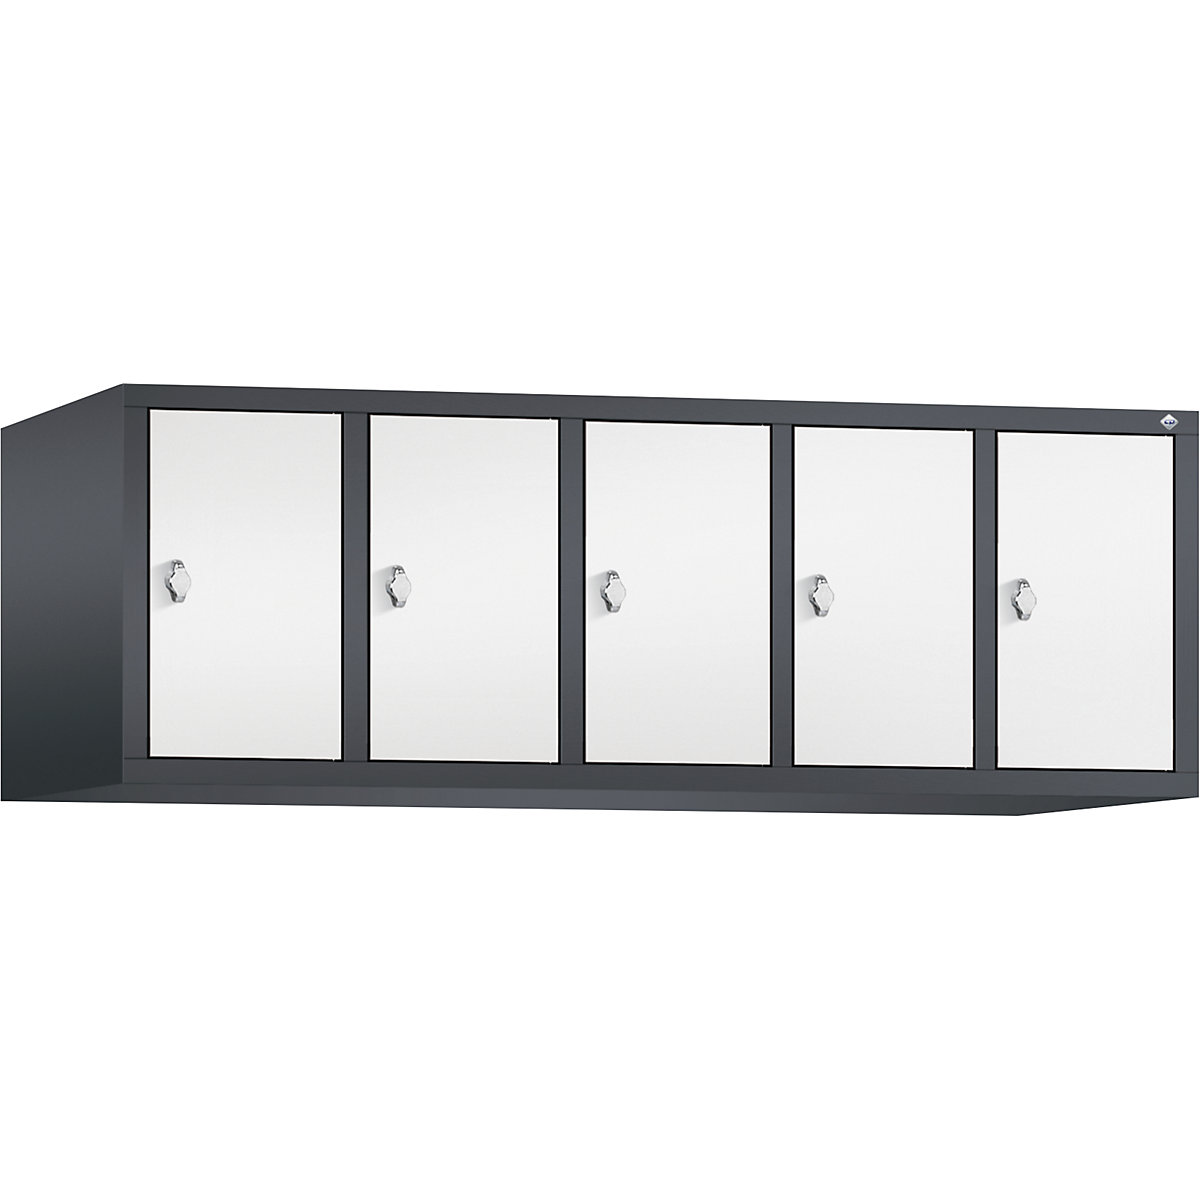 C+P – Altillo CLASSIC, 5 compartimentos, anchura de compartimento 300 mm, gris negruzco / blanco tráfico